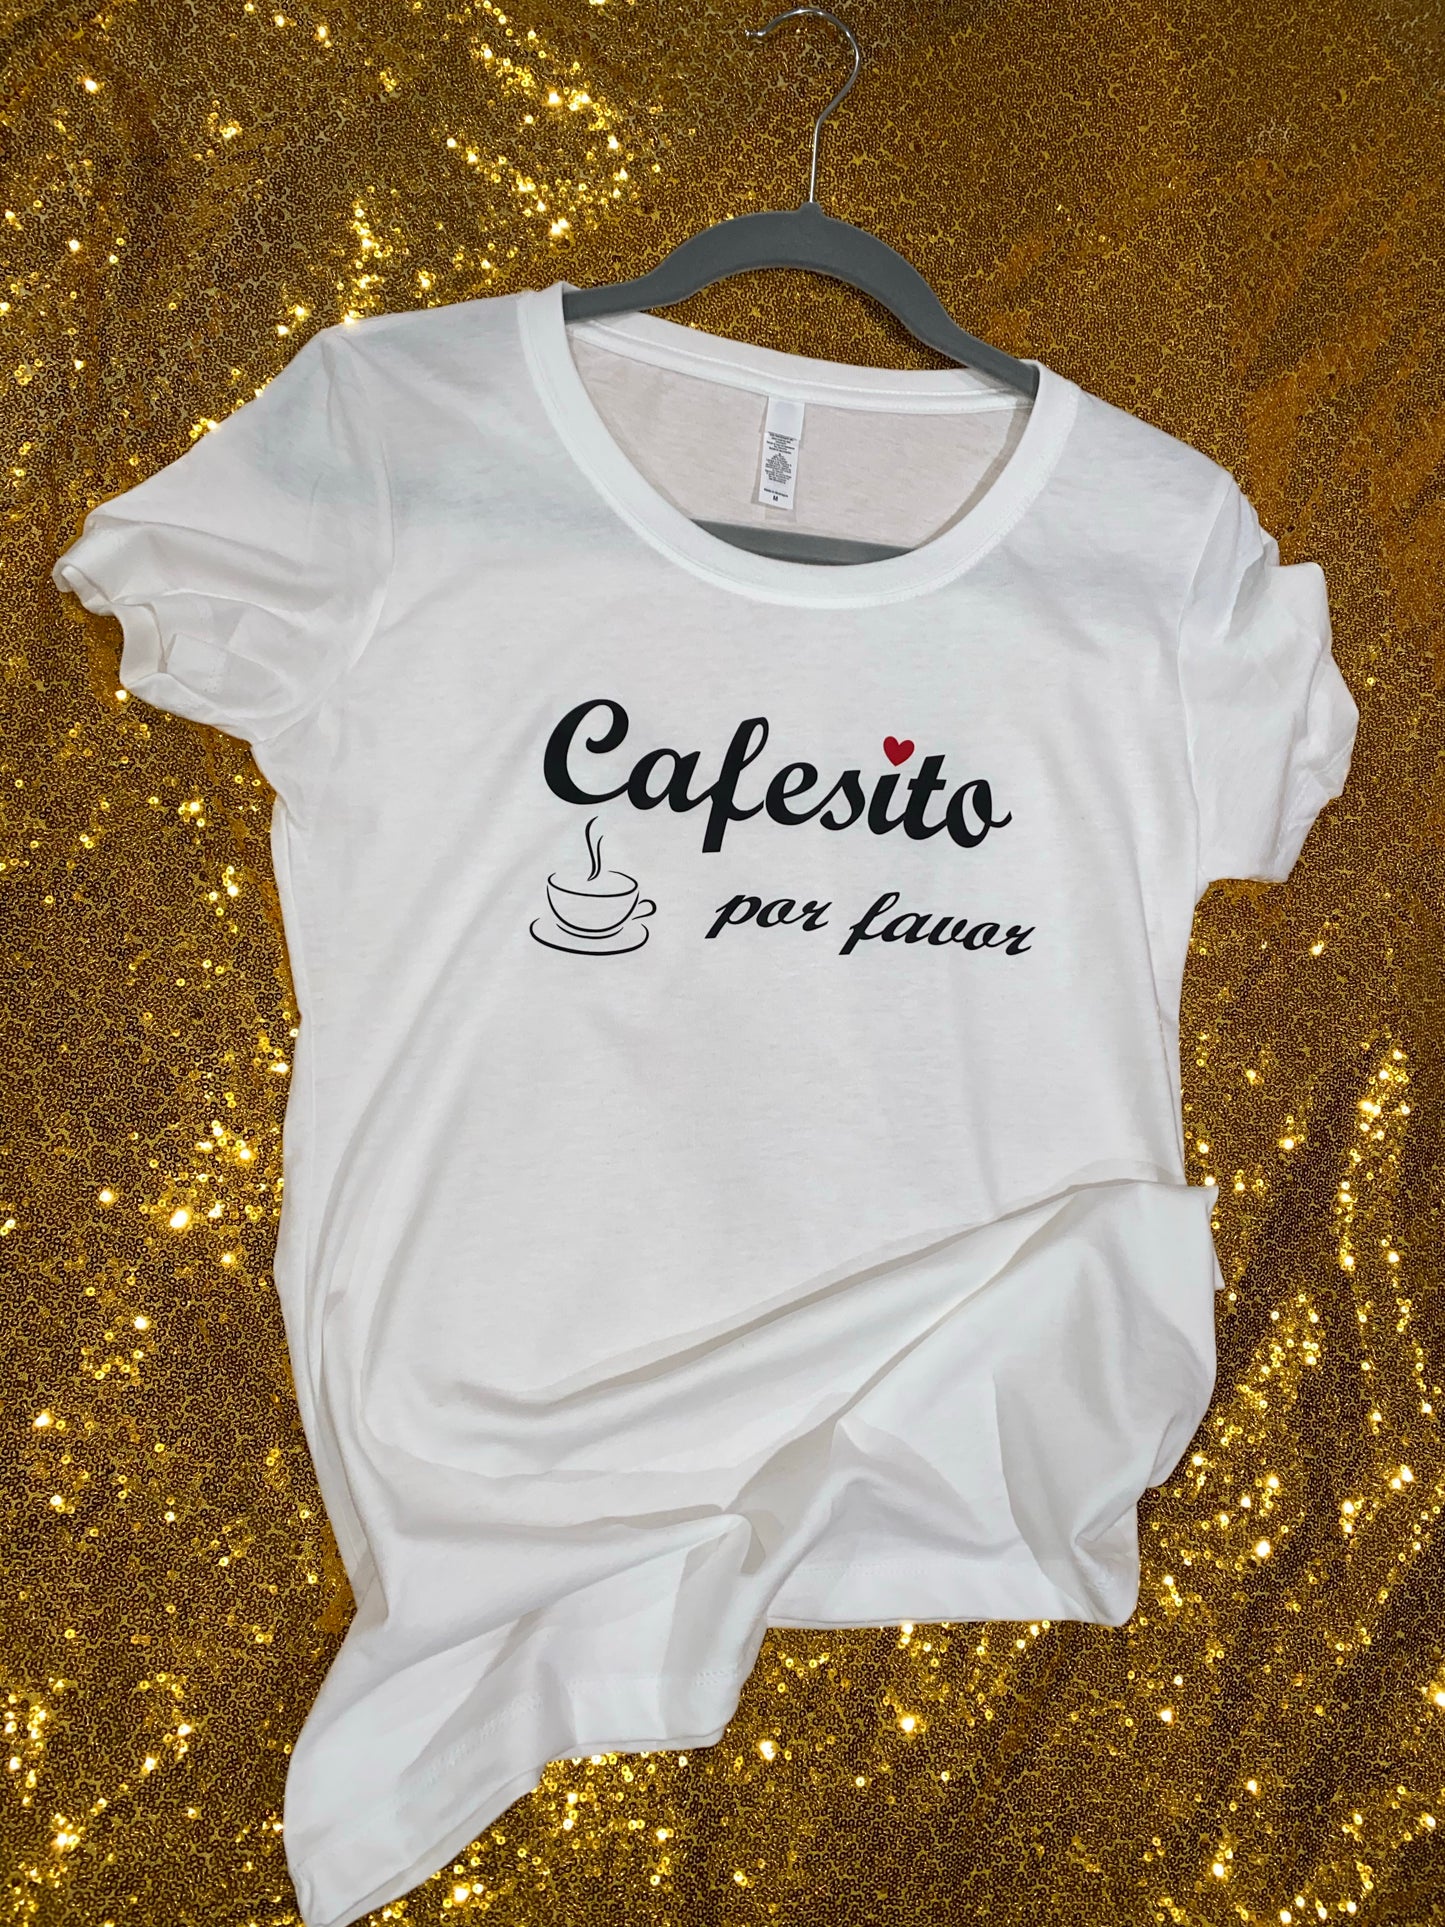 Graphic Shirt “Cafecito por Favor”